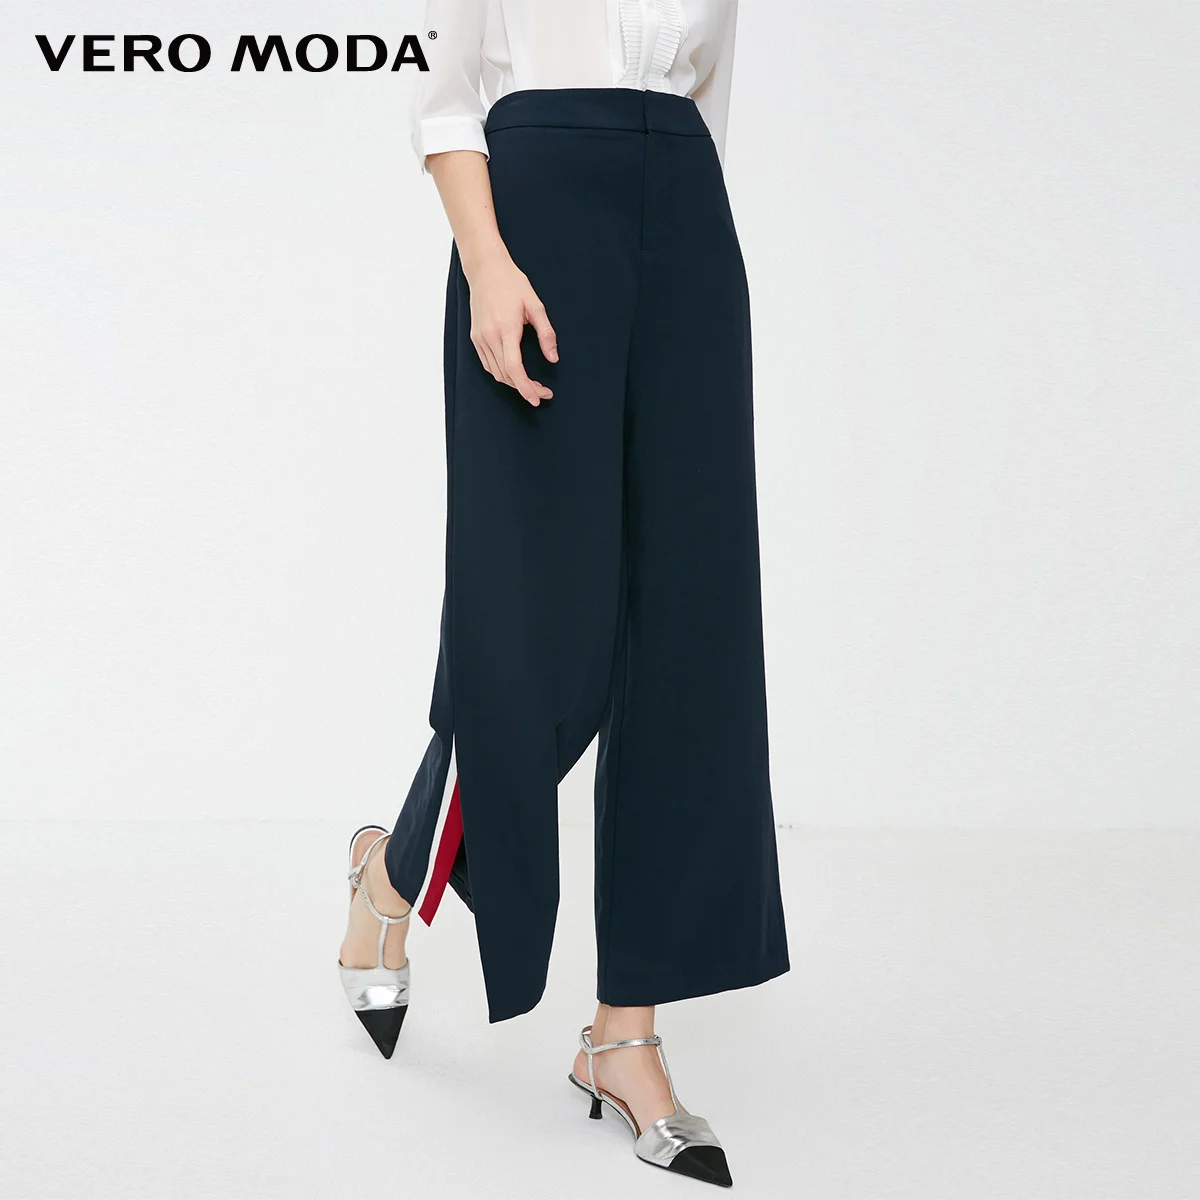 Vero Moda Новые брюки женские поступления OL стиль женские свободные брюки разных цветов Сплит повседневные брюки | 3183PL502